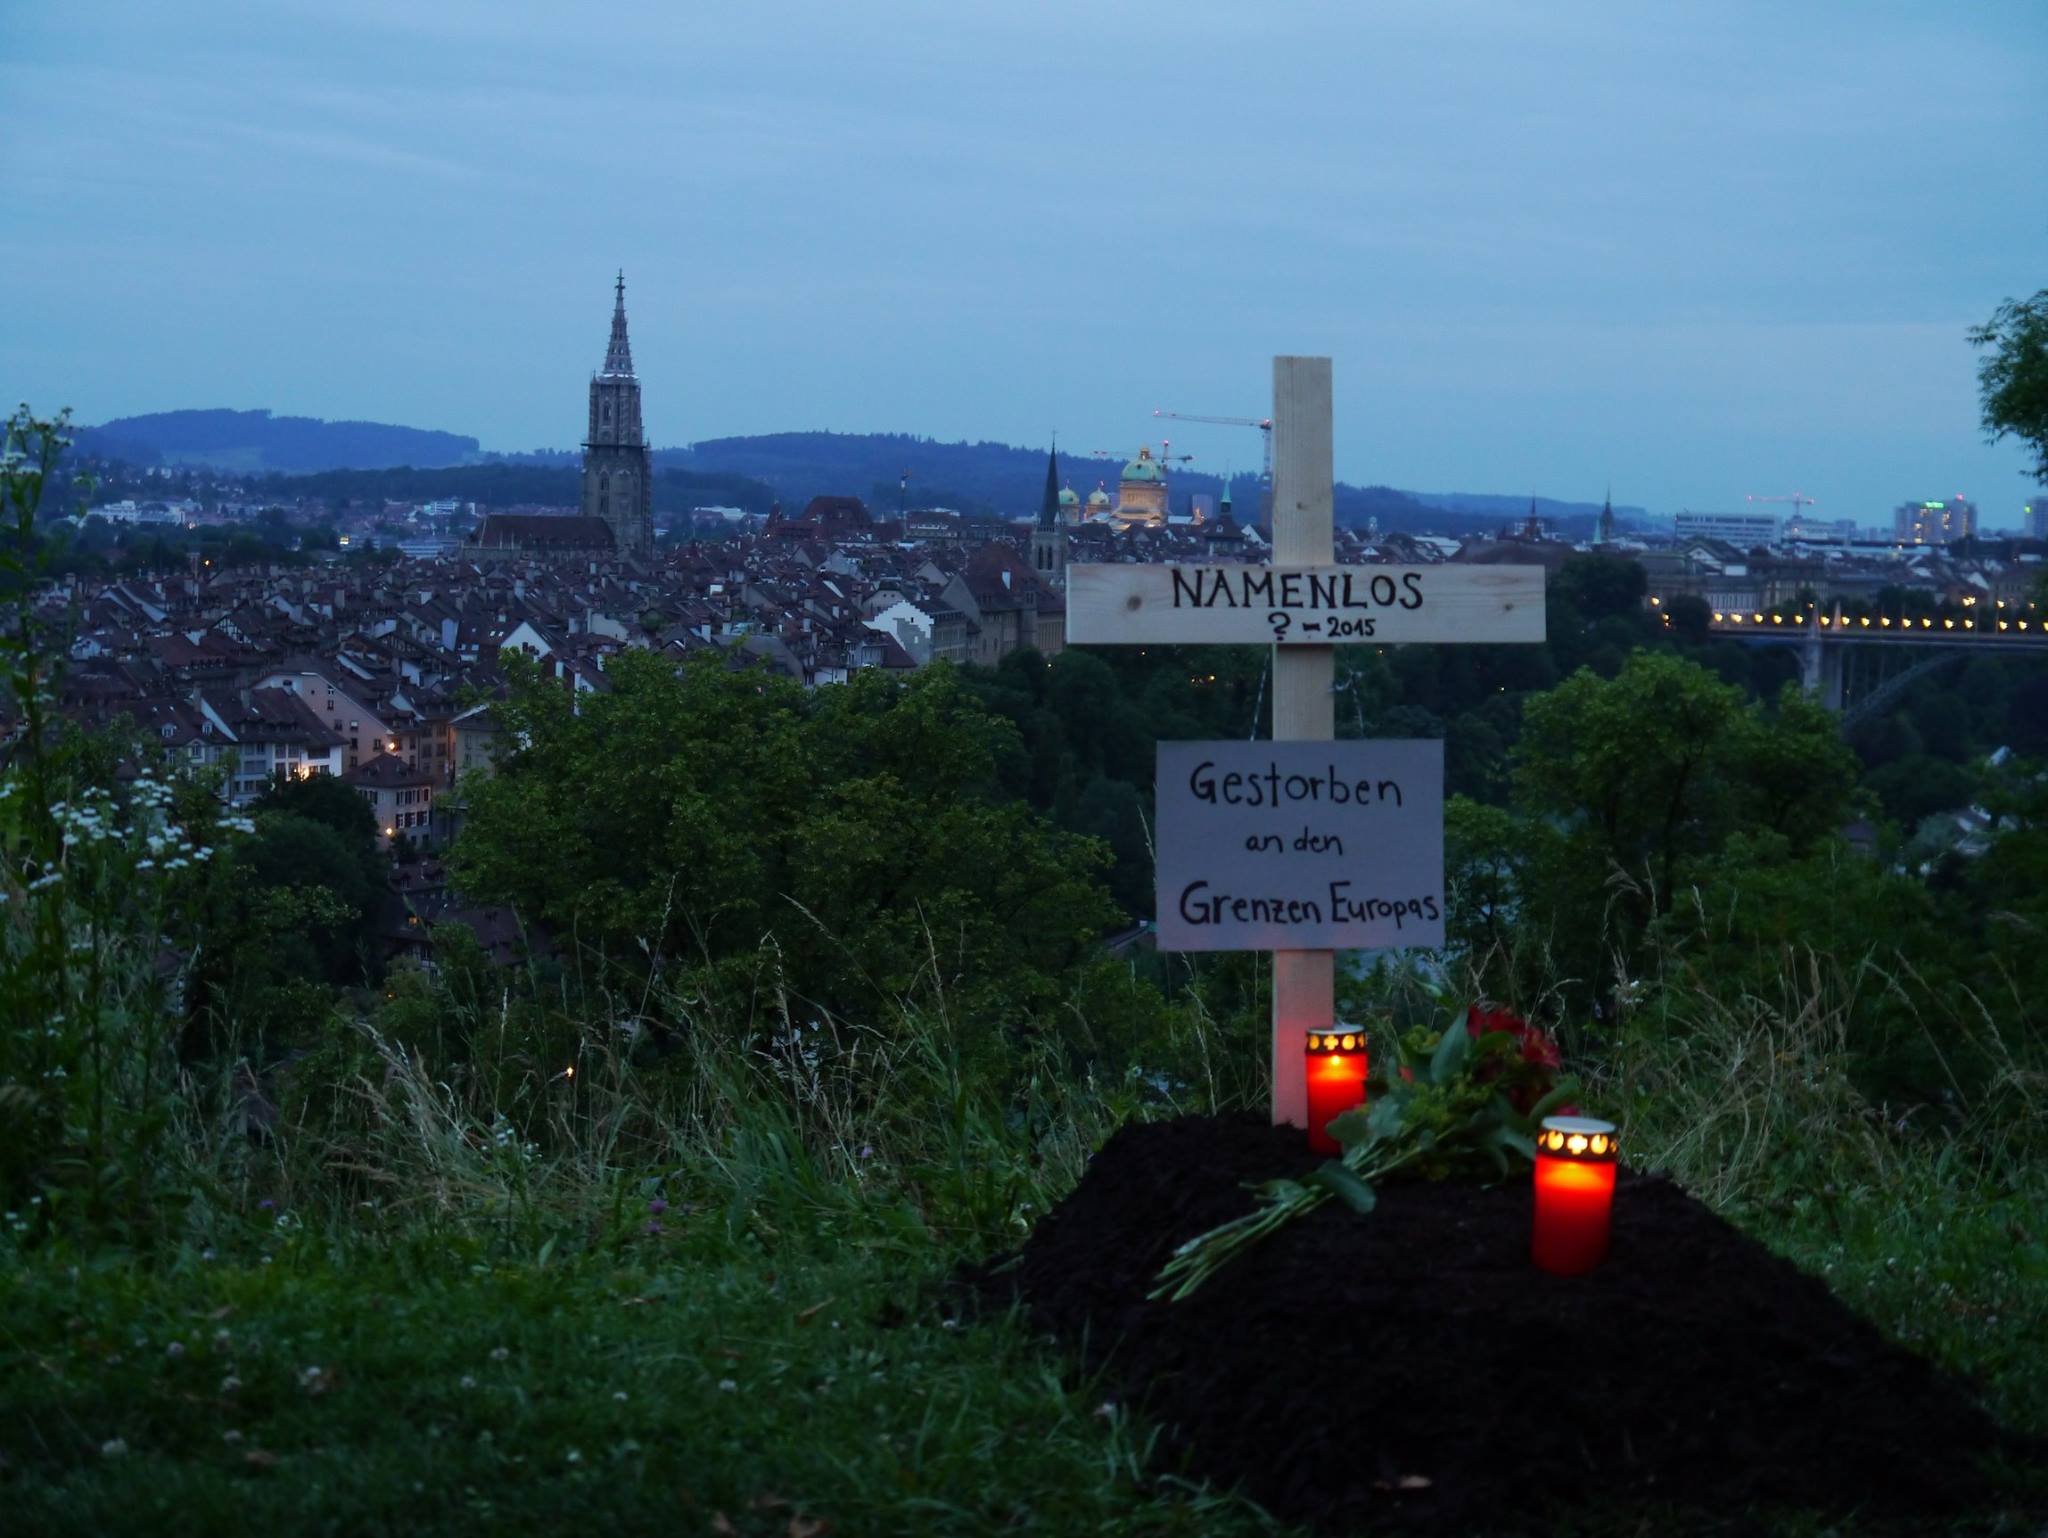 «Gestorben an den Grenzen Europas»: Namenloses Grab am Rosengarten in Bern, entdeckt am vergangenen Sonntag.